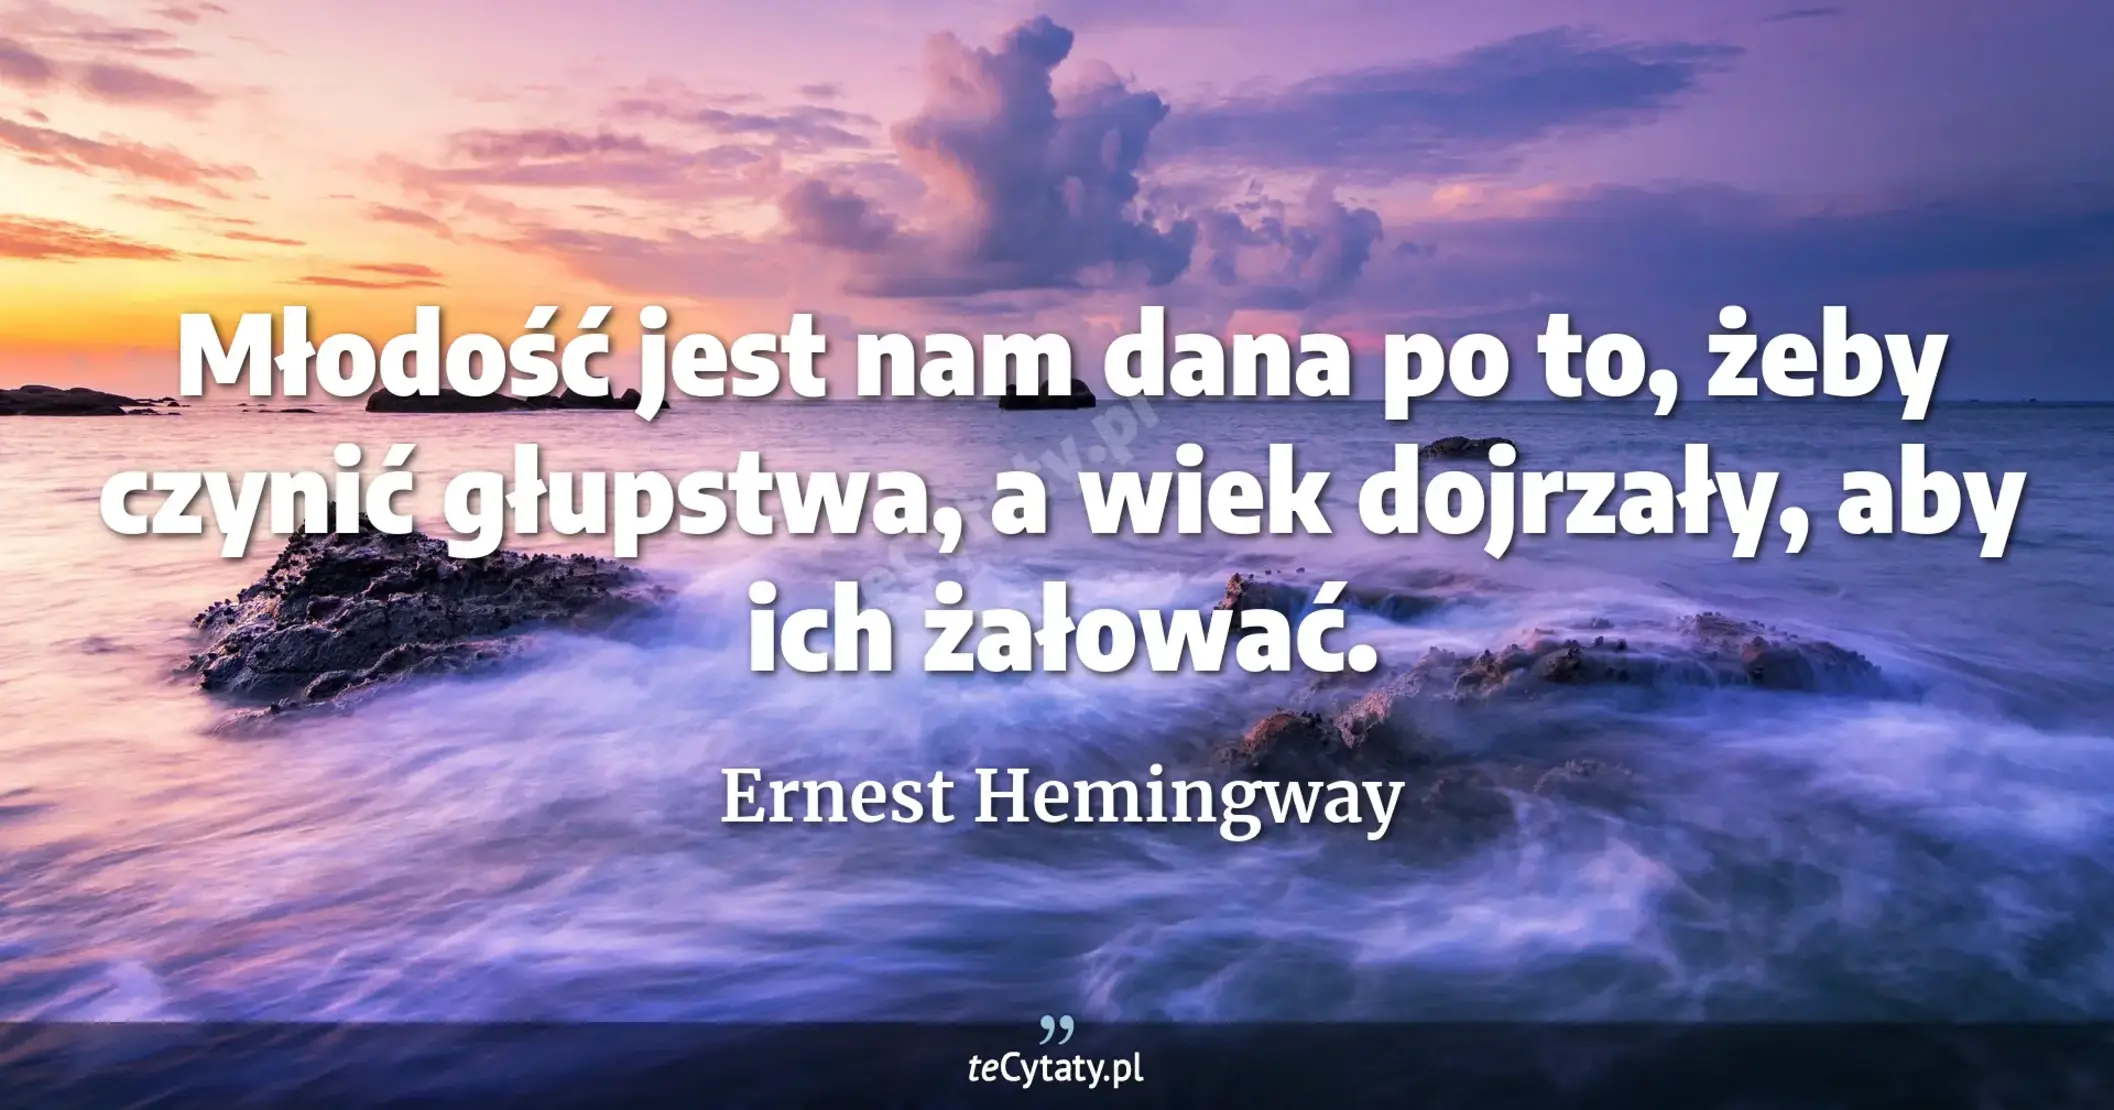 Młodość jest nam dana po to, żeby czynić głupstwa, a wiek dojrzały, aby ich żałować. - Ernest Hemingway